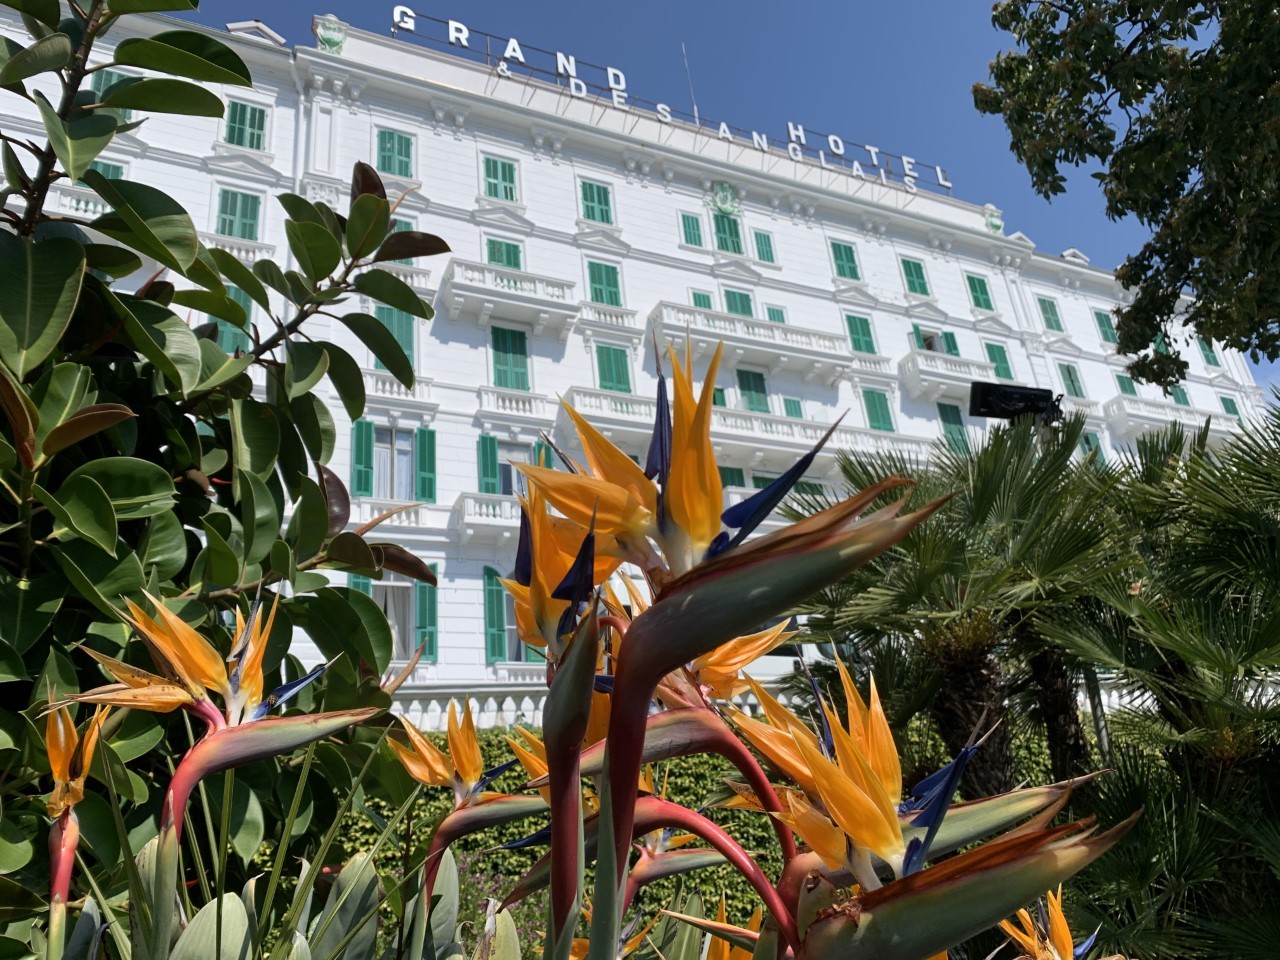  Nuova Validità! 2 giorni e 1 notte Pernottamento x 2 persone in camera doppia vista mare in mezza pensione al Grand Hotel & Des Anglais a Sanremo!